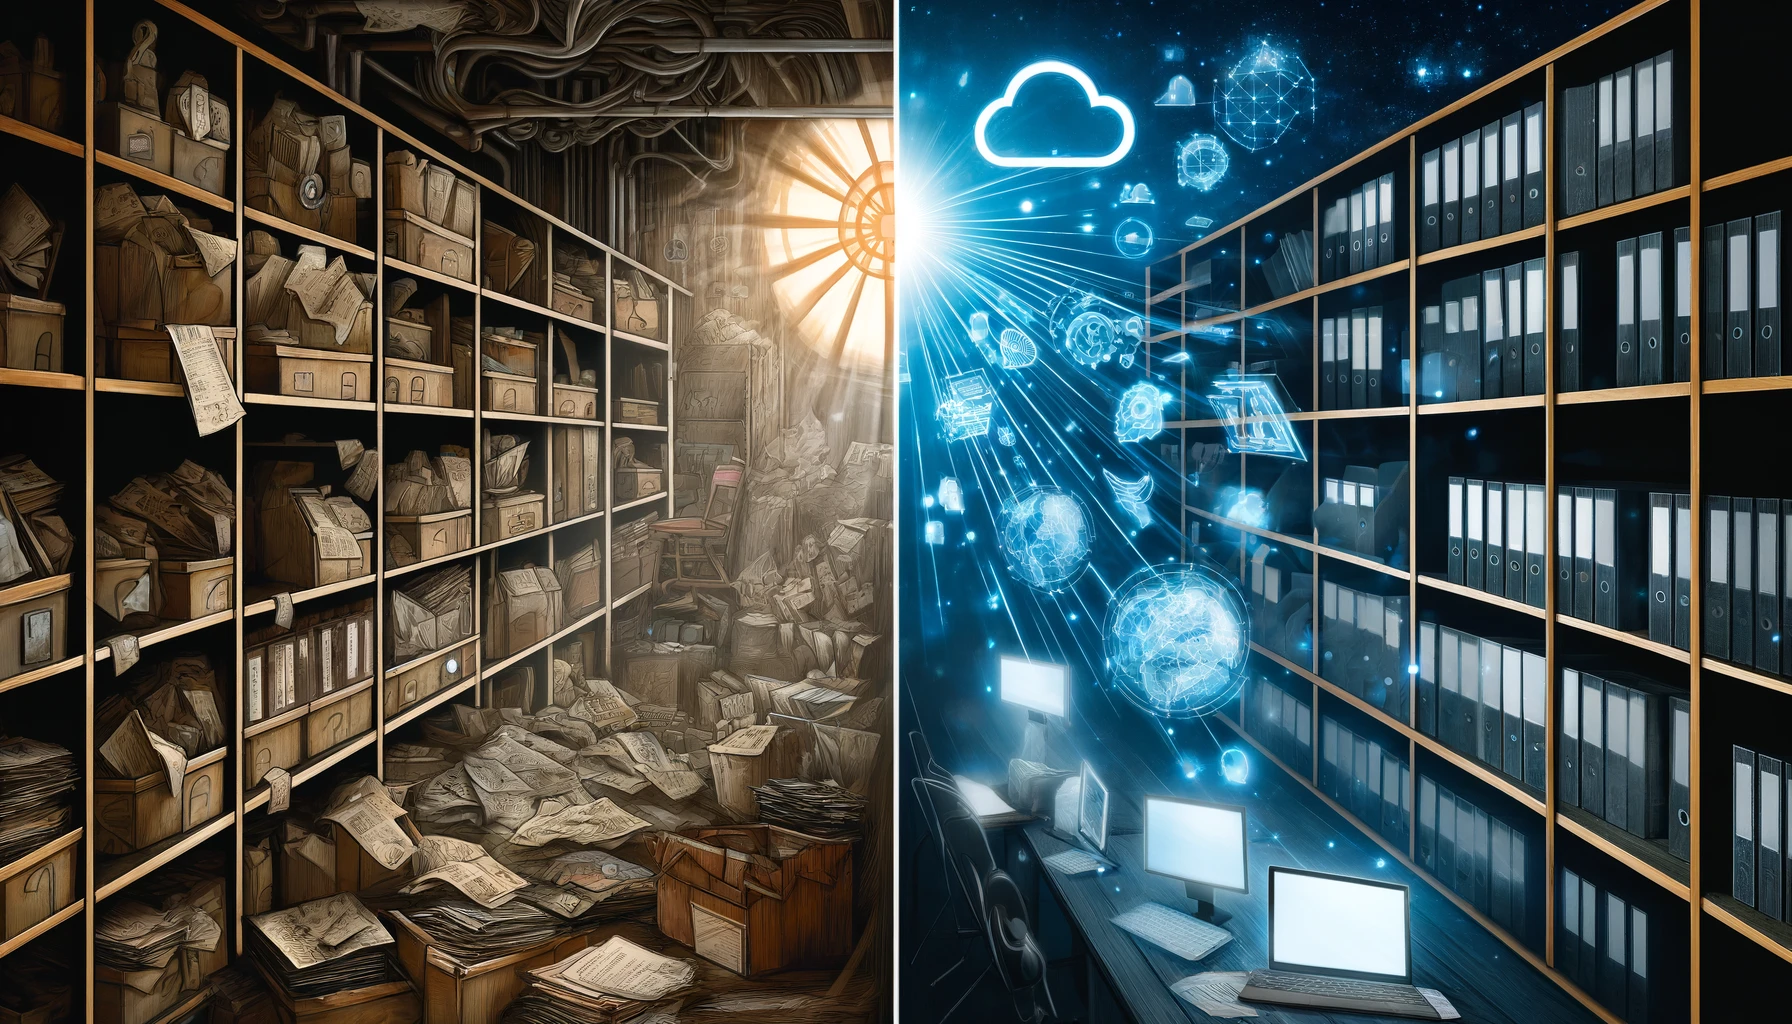 Trasformazione da archivi aziendali polverosi a risorse digitali luminose e connesse.